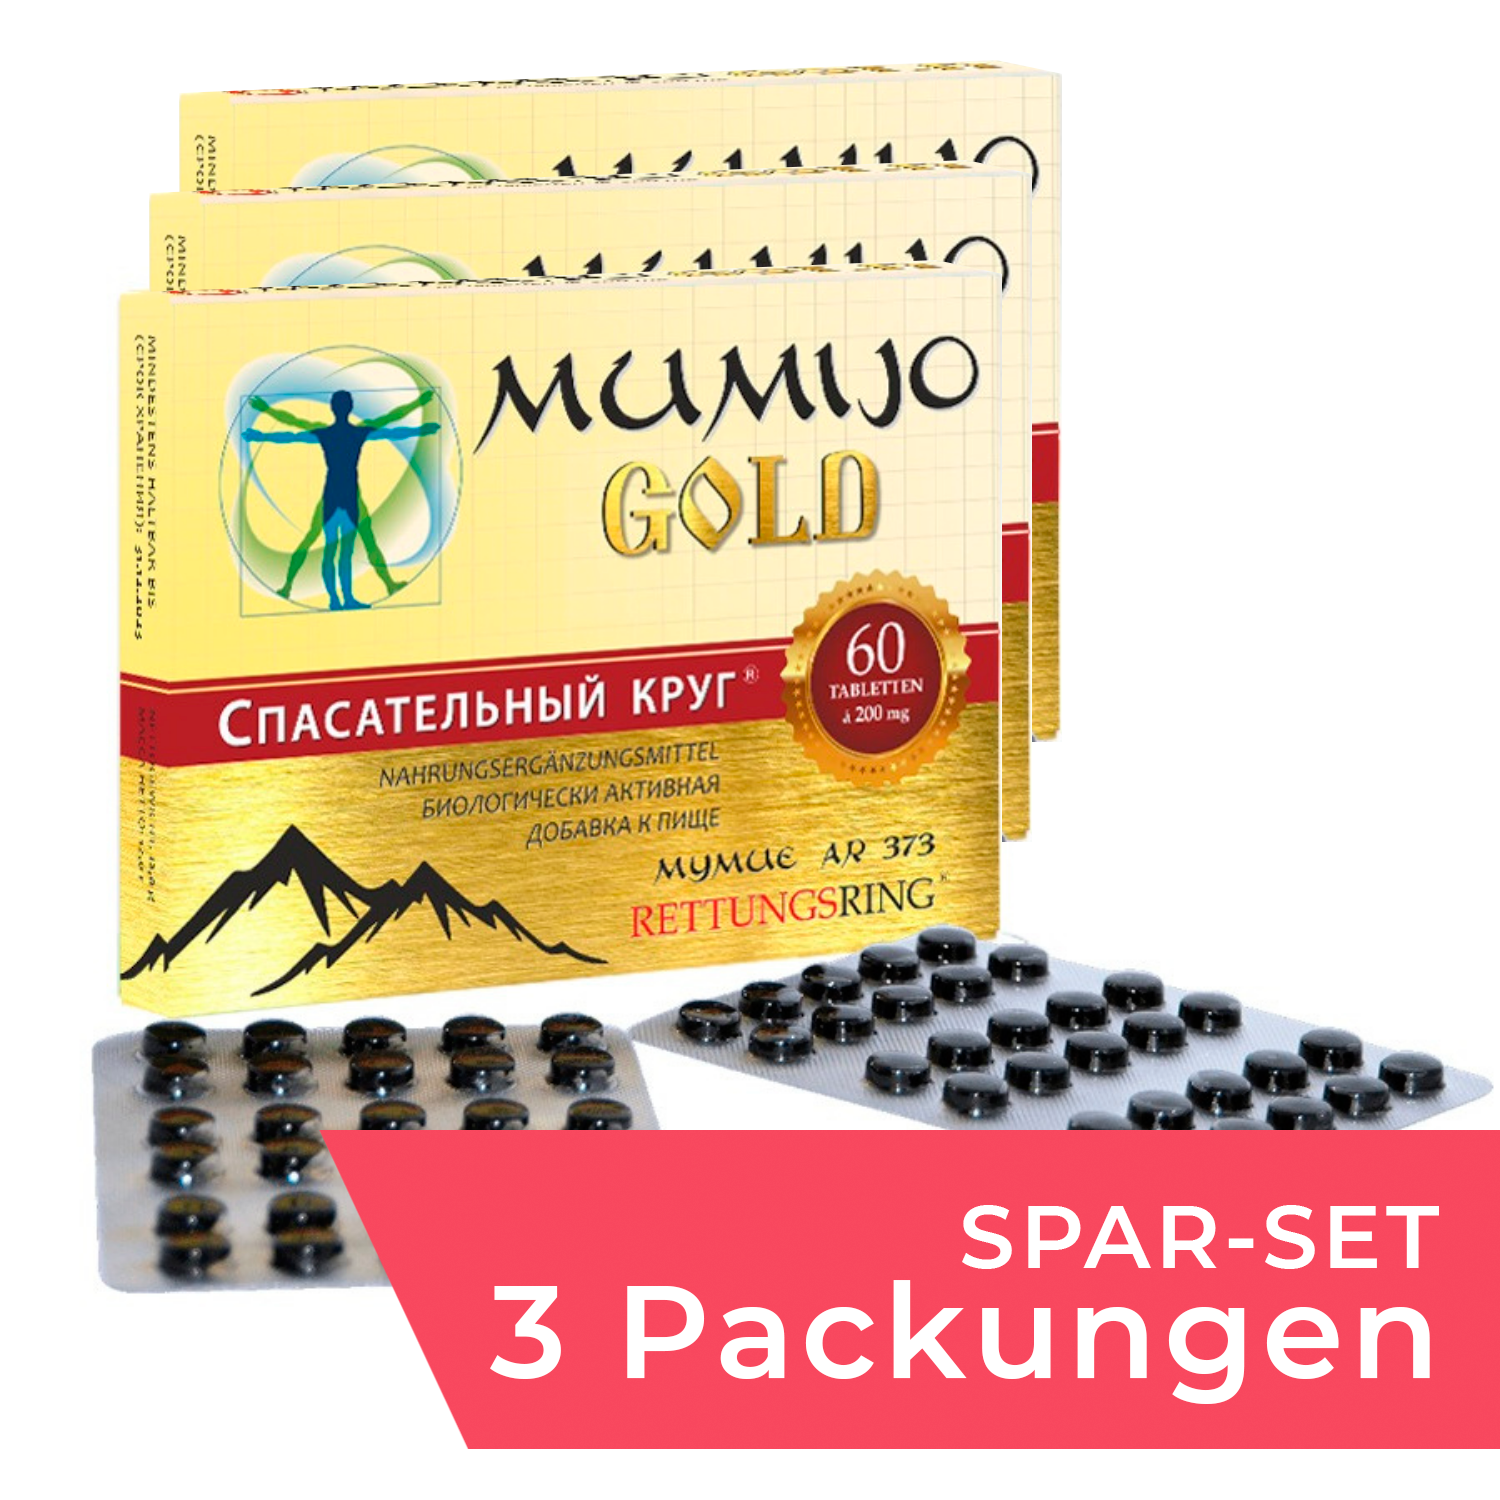 Spar-Set: 3 Packungen Mumijo "Gold", 60 Tabl. (Nahrungsergänzungsmittel)